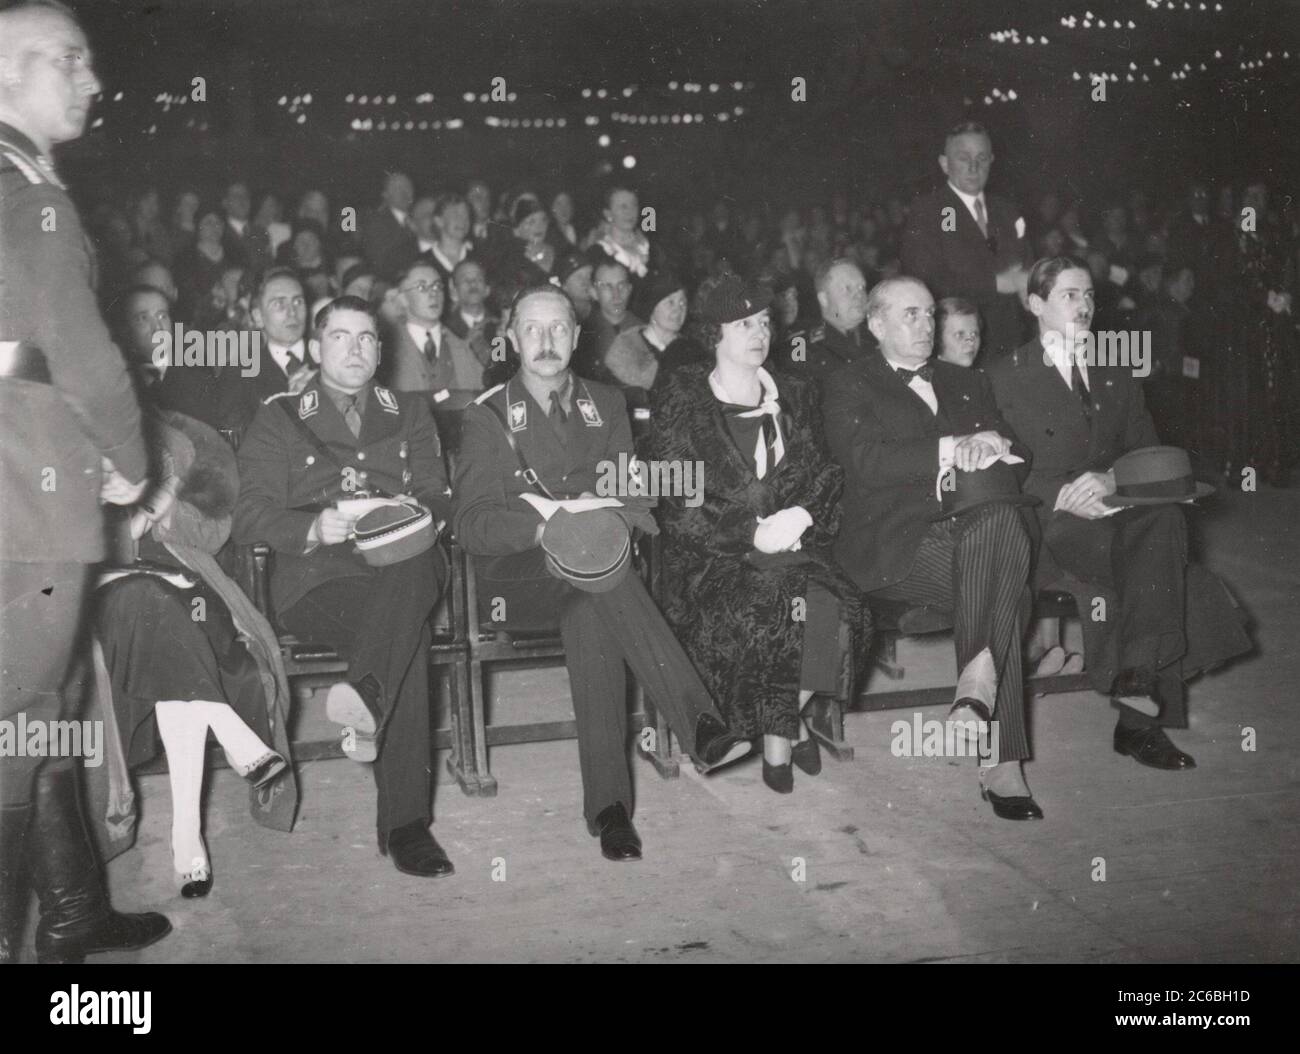 La banda de música italiana toca al príncipe Guillermo de agosto en el Sportpalast de Berlín Heinrich Hoffmann Photographs 1934 el fotógrafo oficial de Adolf Hitler, y un político y editor nazi, que era un miembro del círculo íntimo de Hitler. Foto de stock